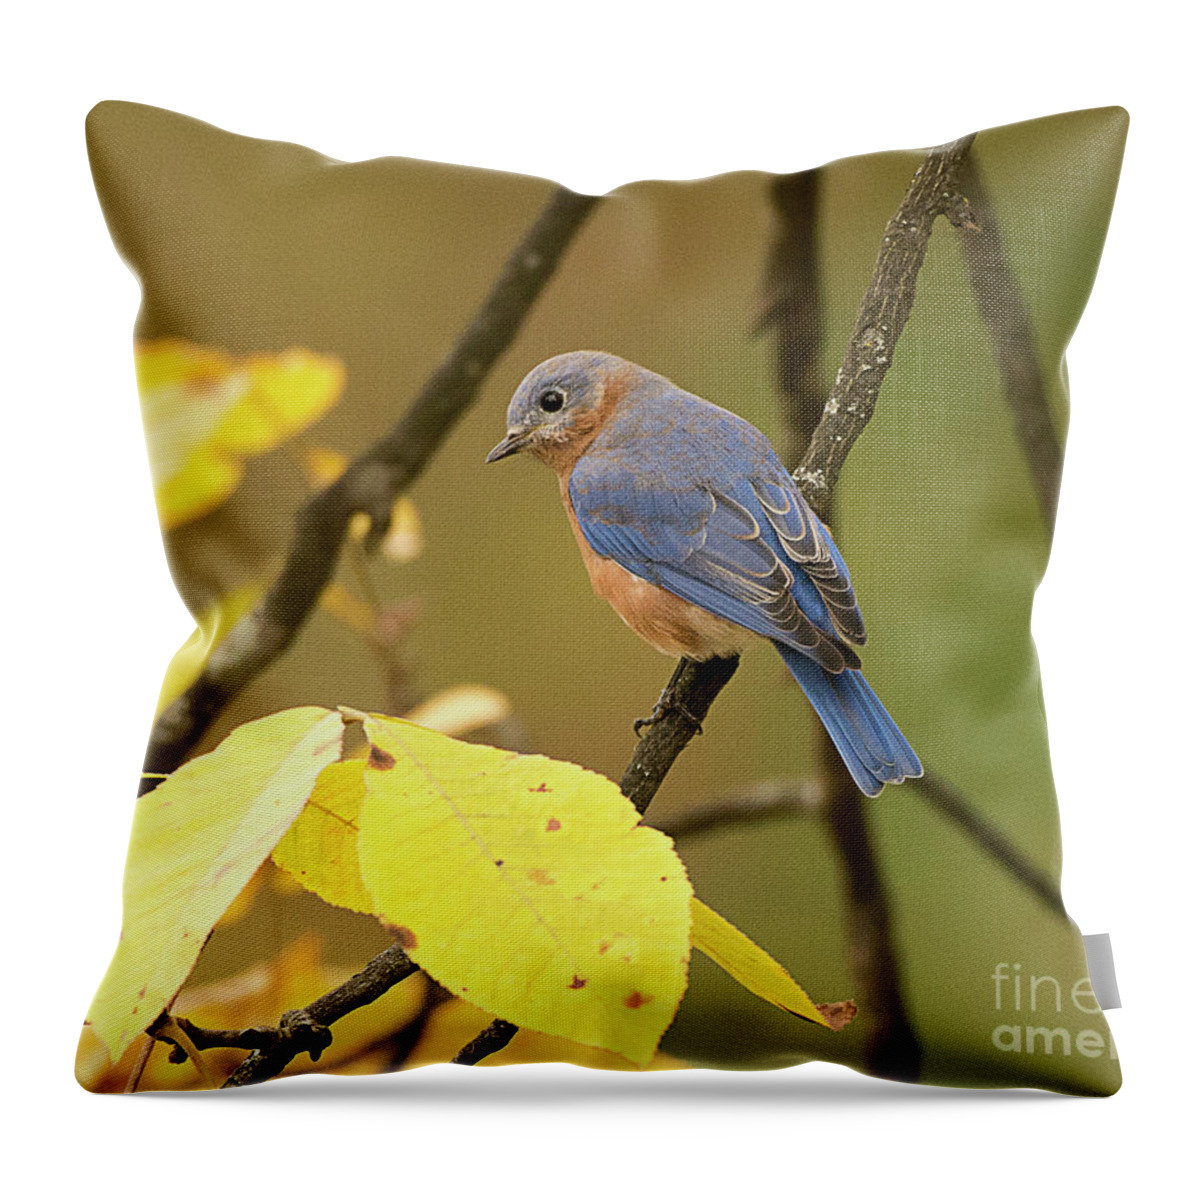 Bird Throw Pillow featuring the photograph Eastern Bluebird by Dennis Hammer